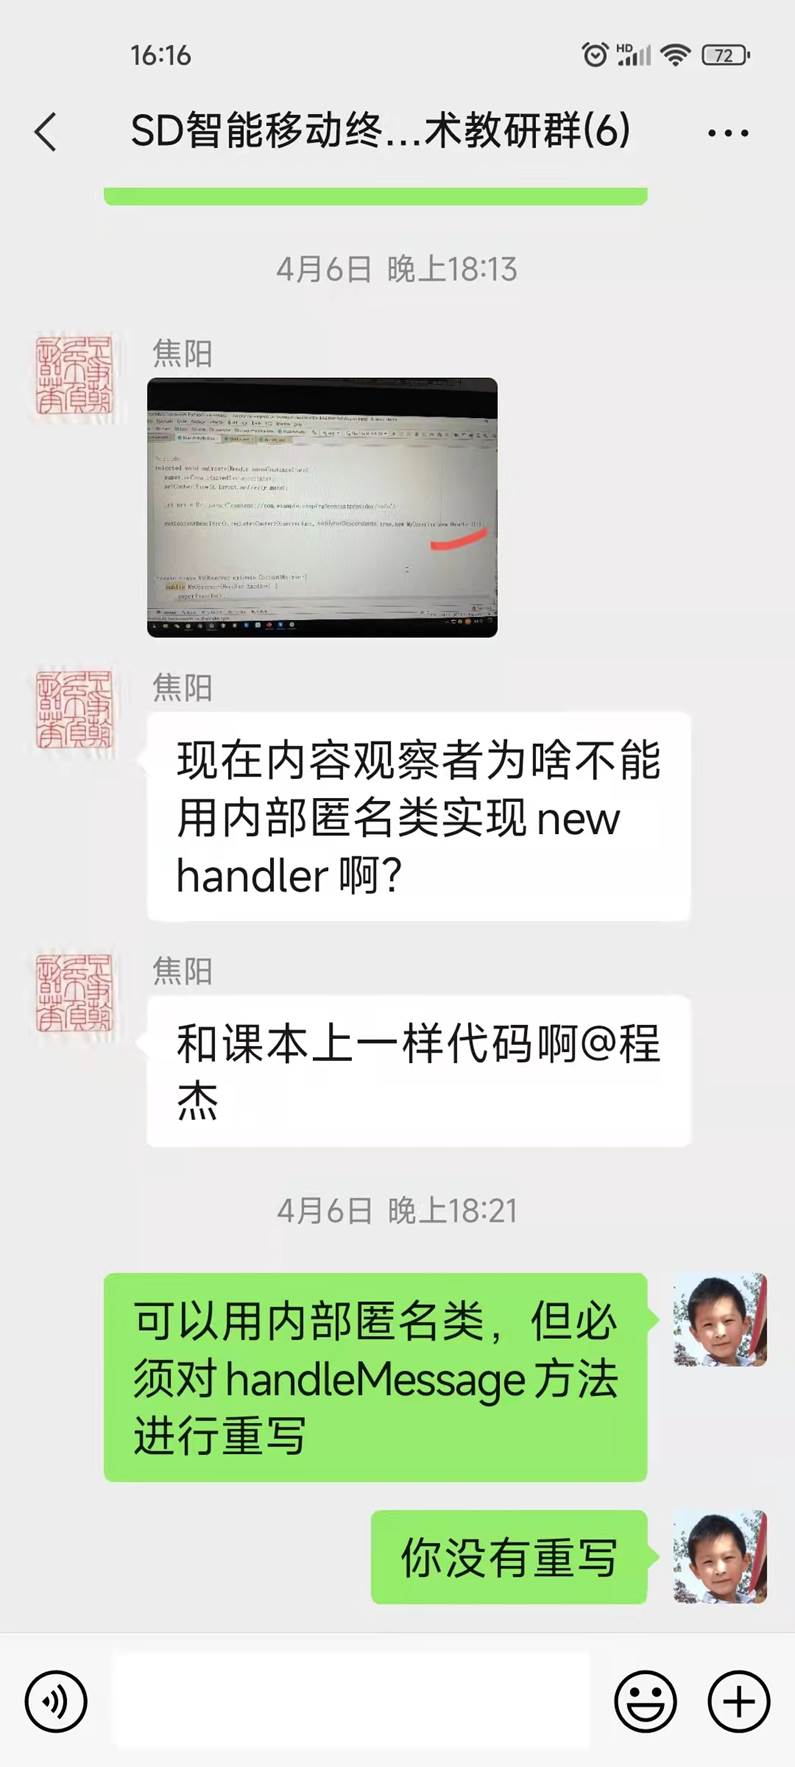 说明: C:\Users\Zhao\AppData\Local\Temp\WeChat Files\480a09cc755af7f100f1dffb8367201.jpg